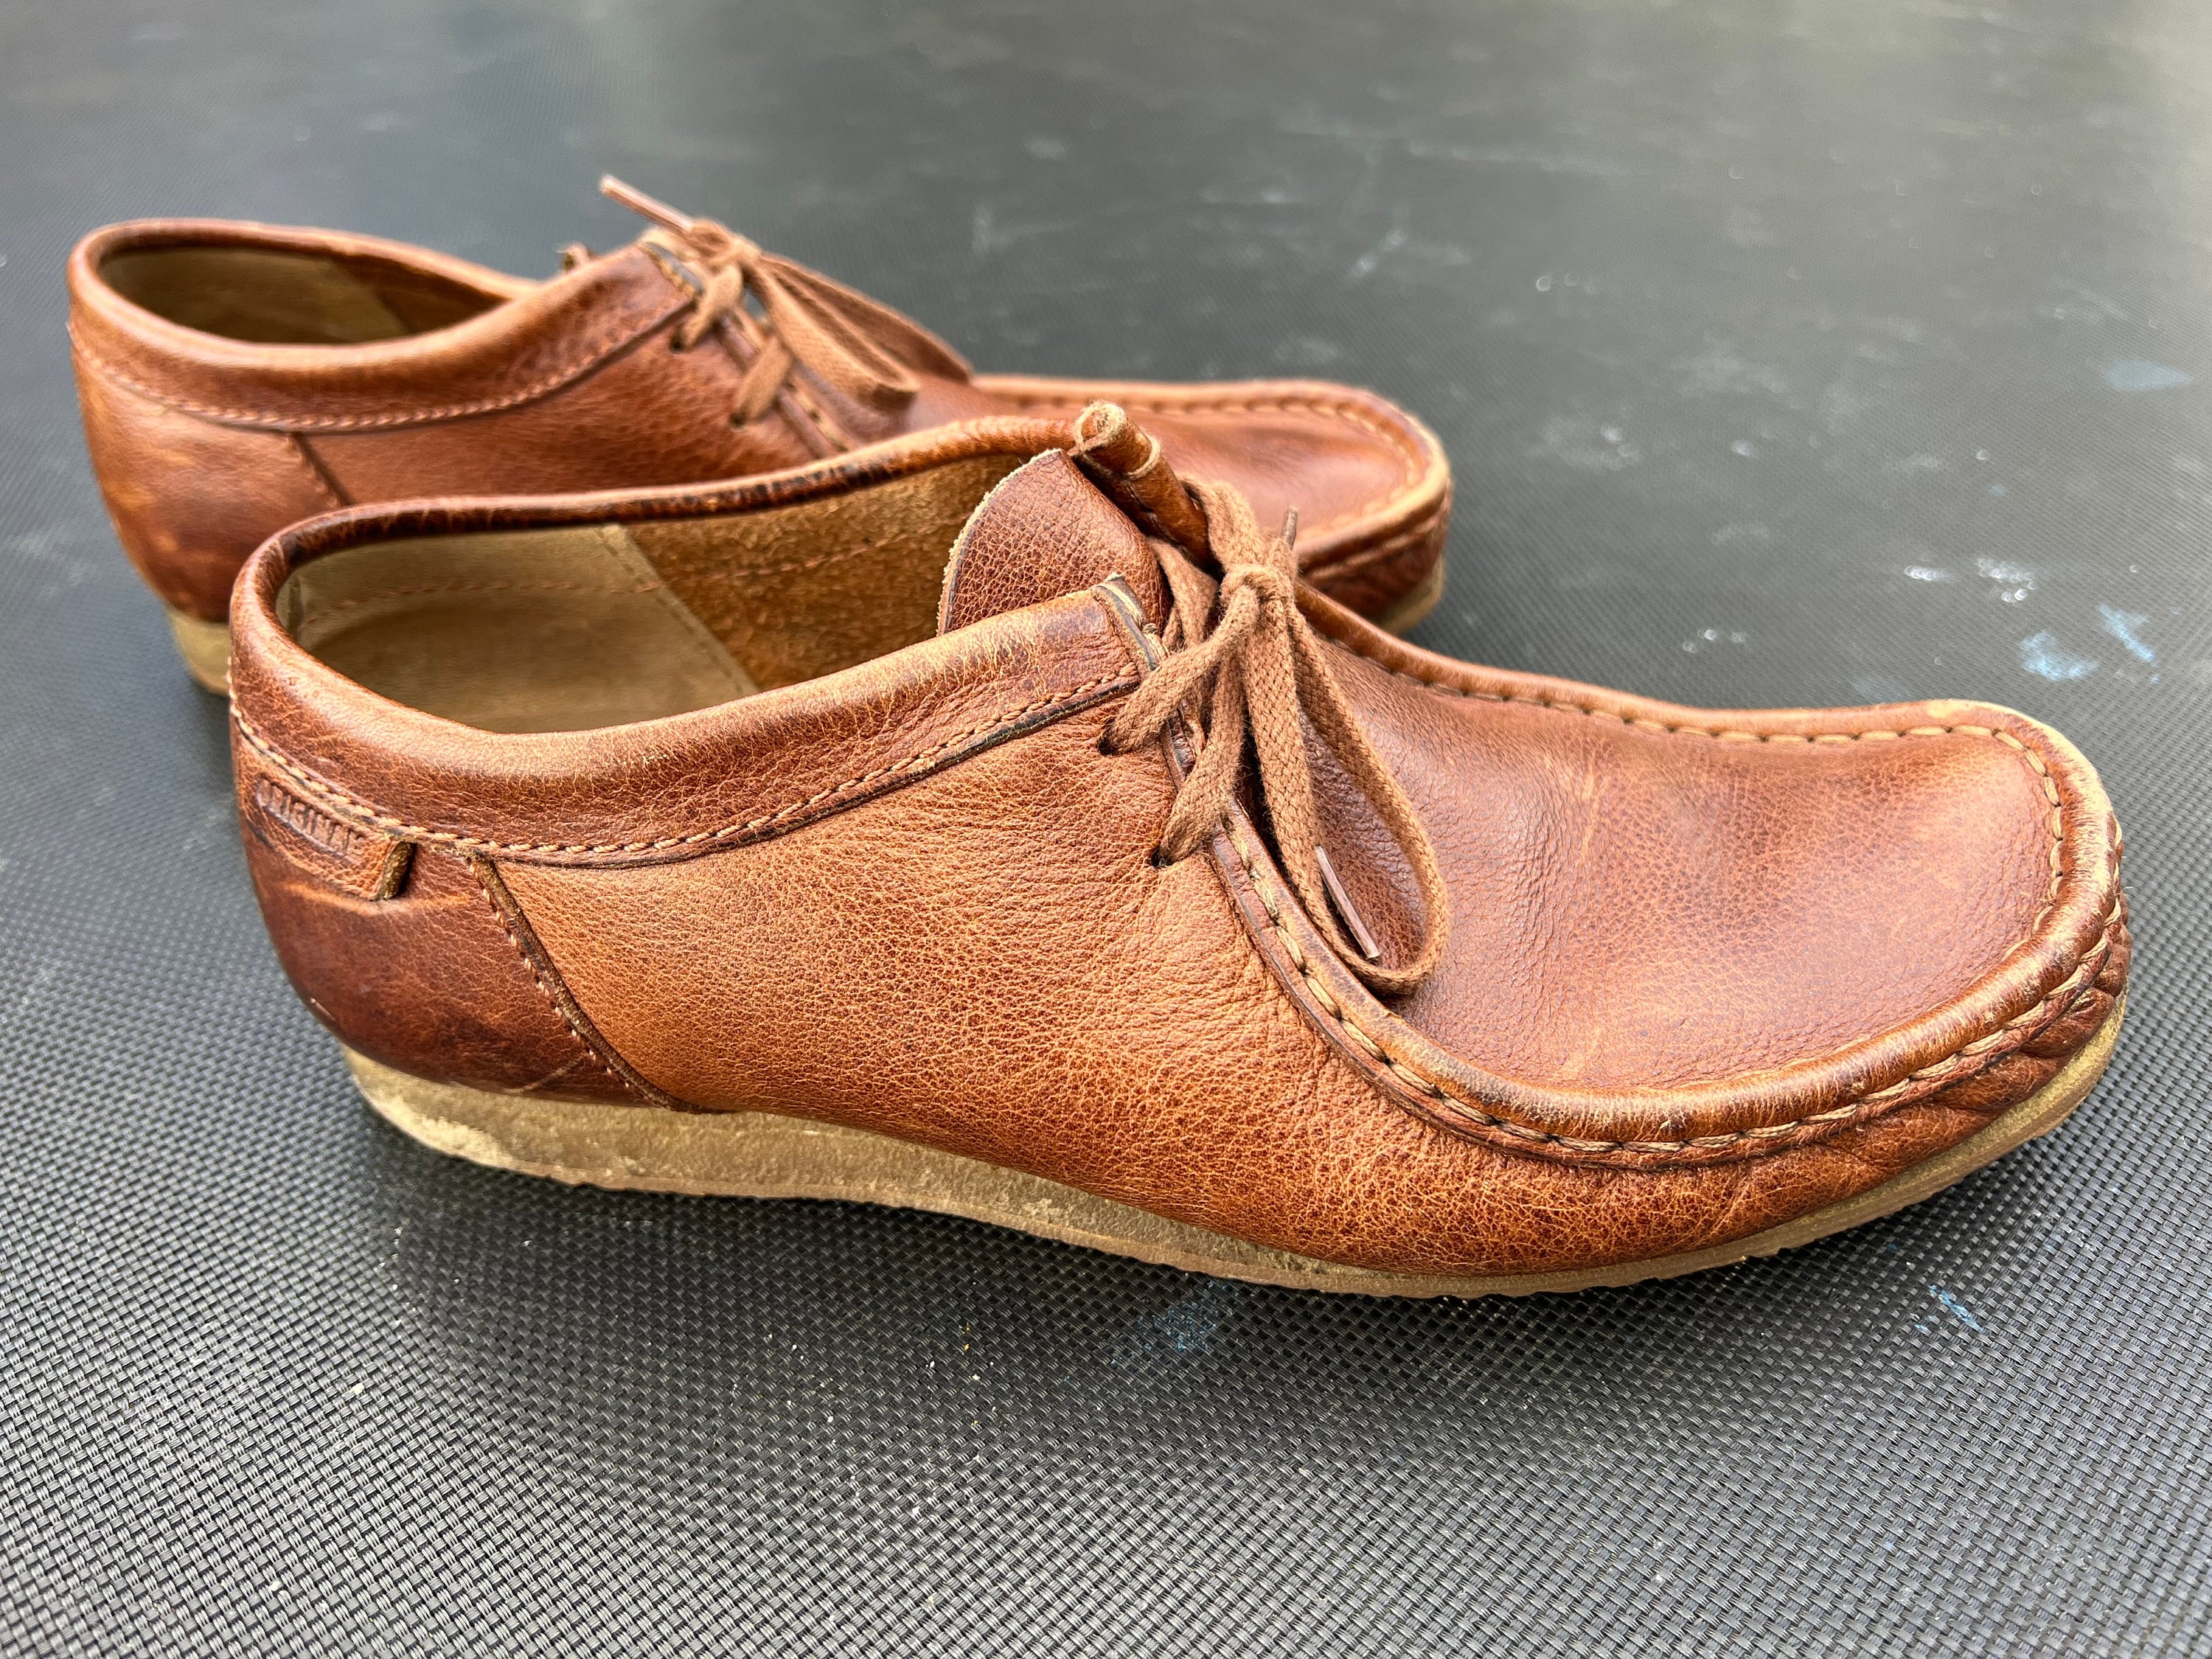 Vintage clarks shoes - Etsy.de